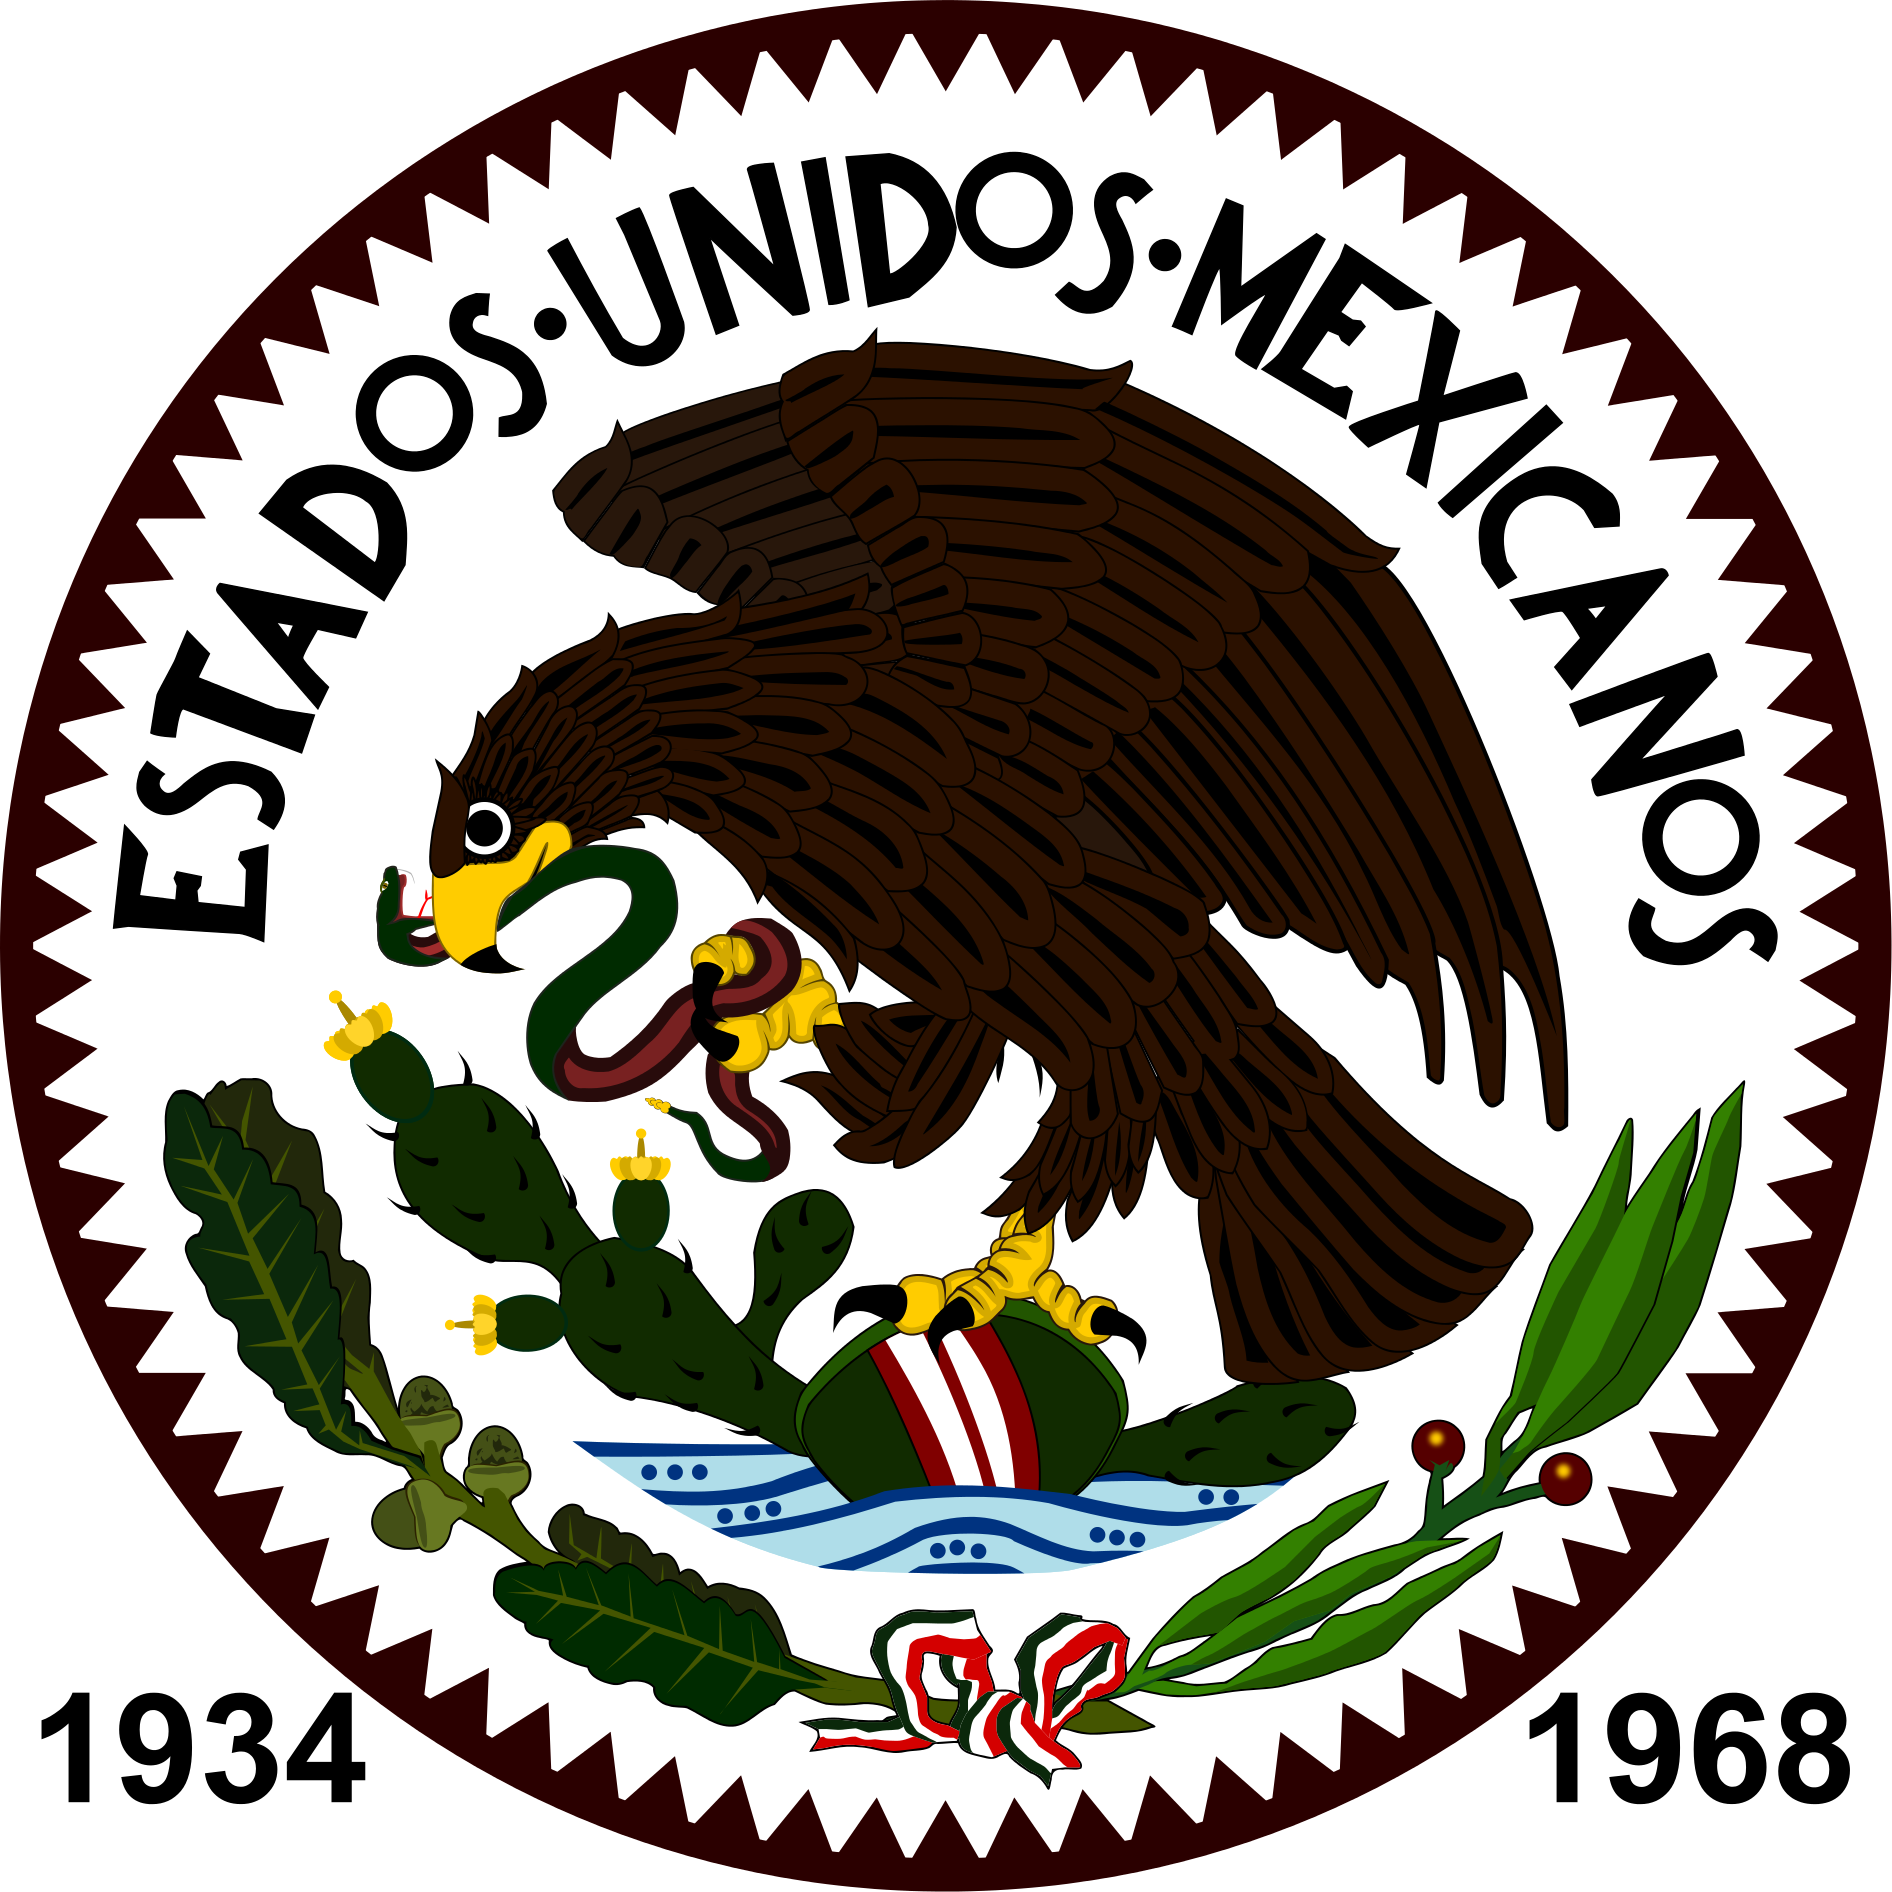 Download Escudo De Estados Unidos Mexicanos Romania Football Federation Logo Png Image With No Background Pngkey Com